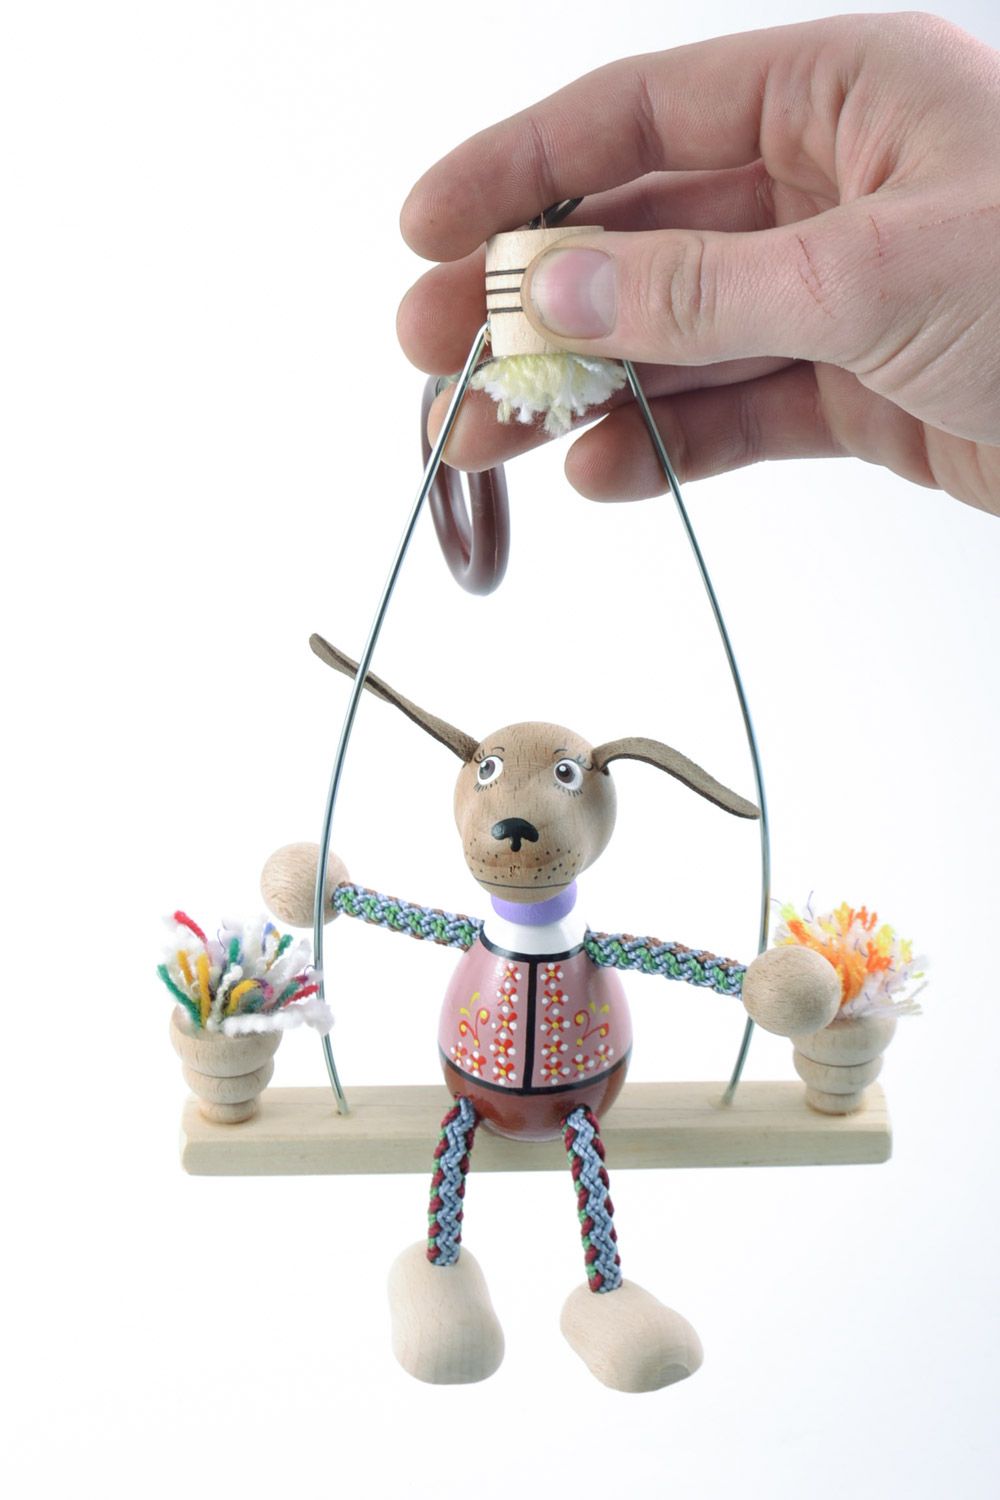 Детская игрушка на пружинке ручной работы из дерева расписанная эко красками фото 2